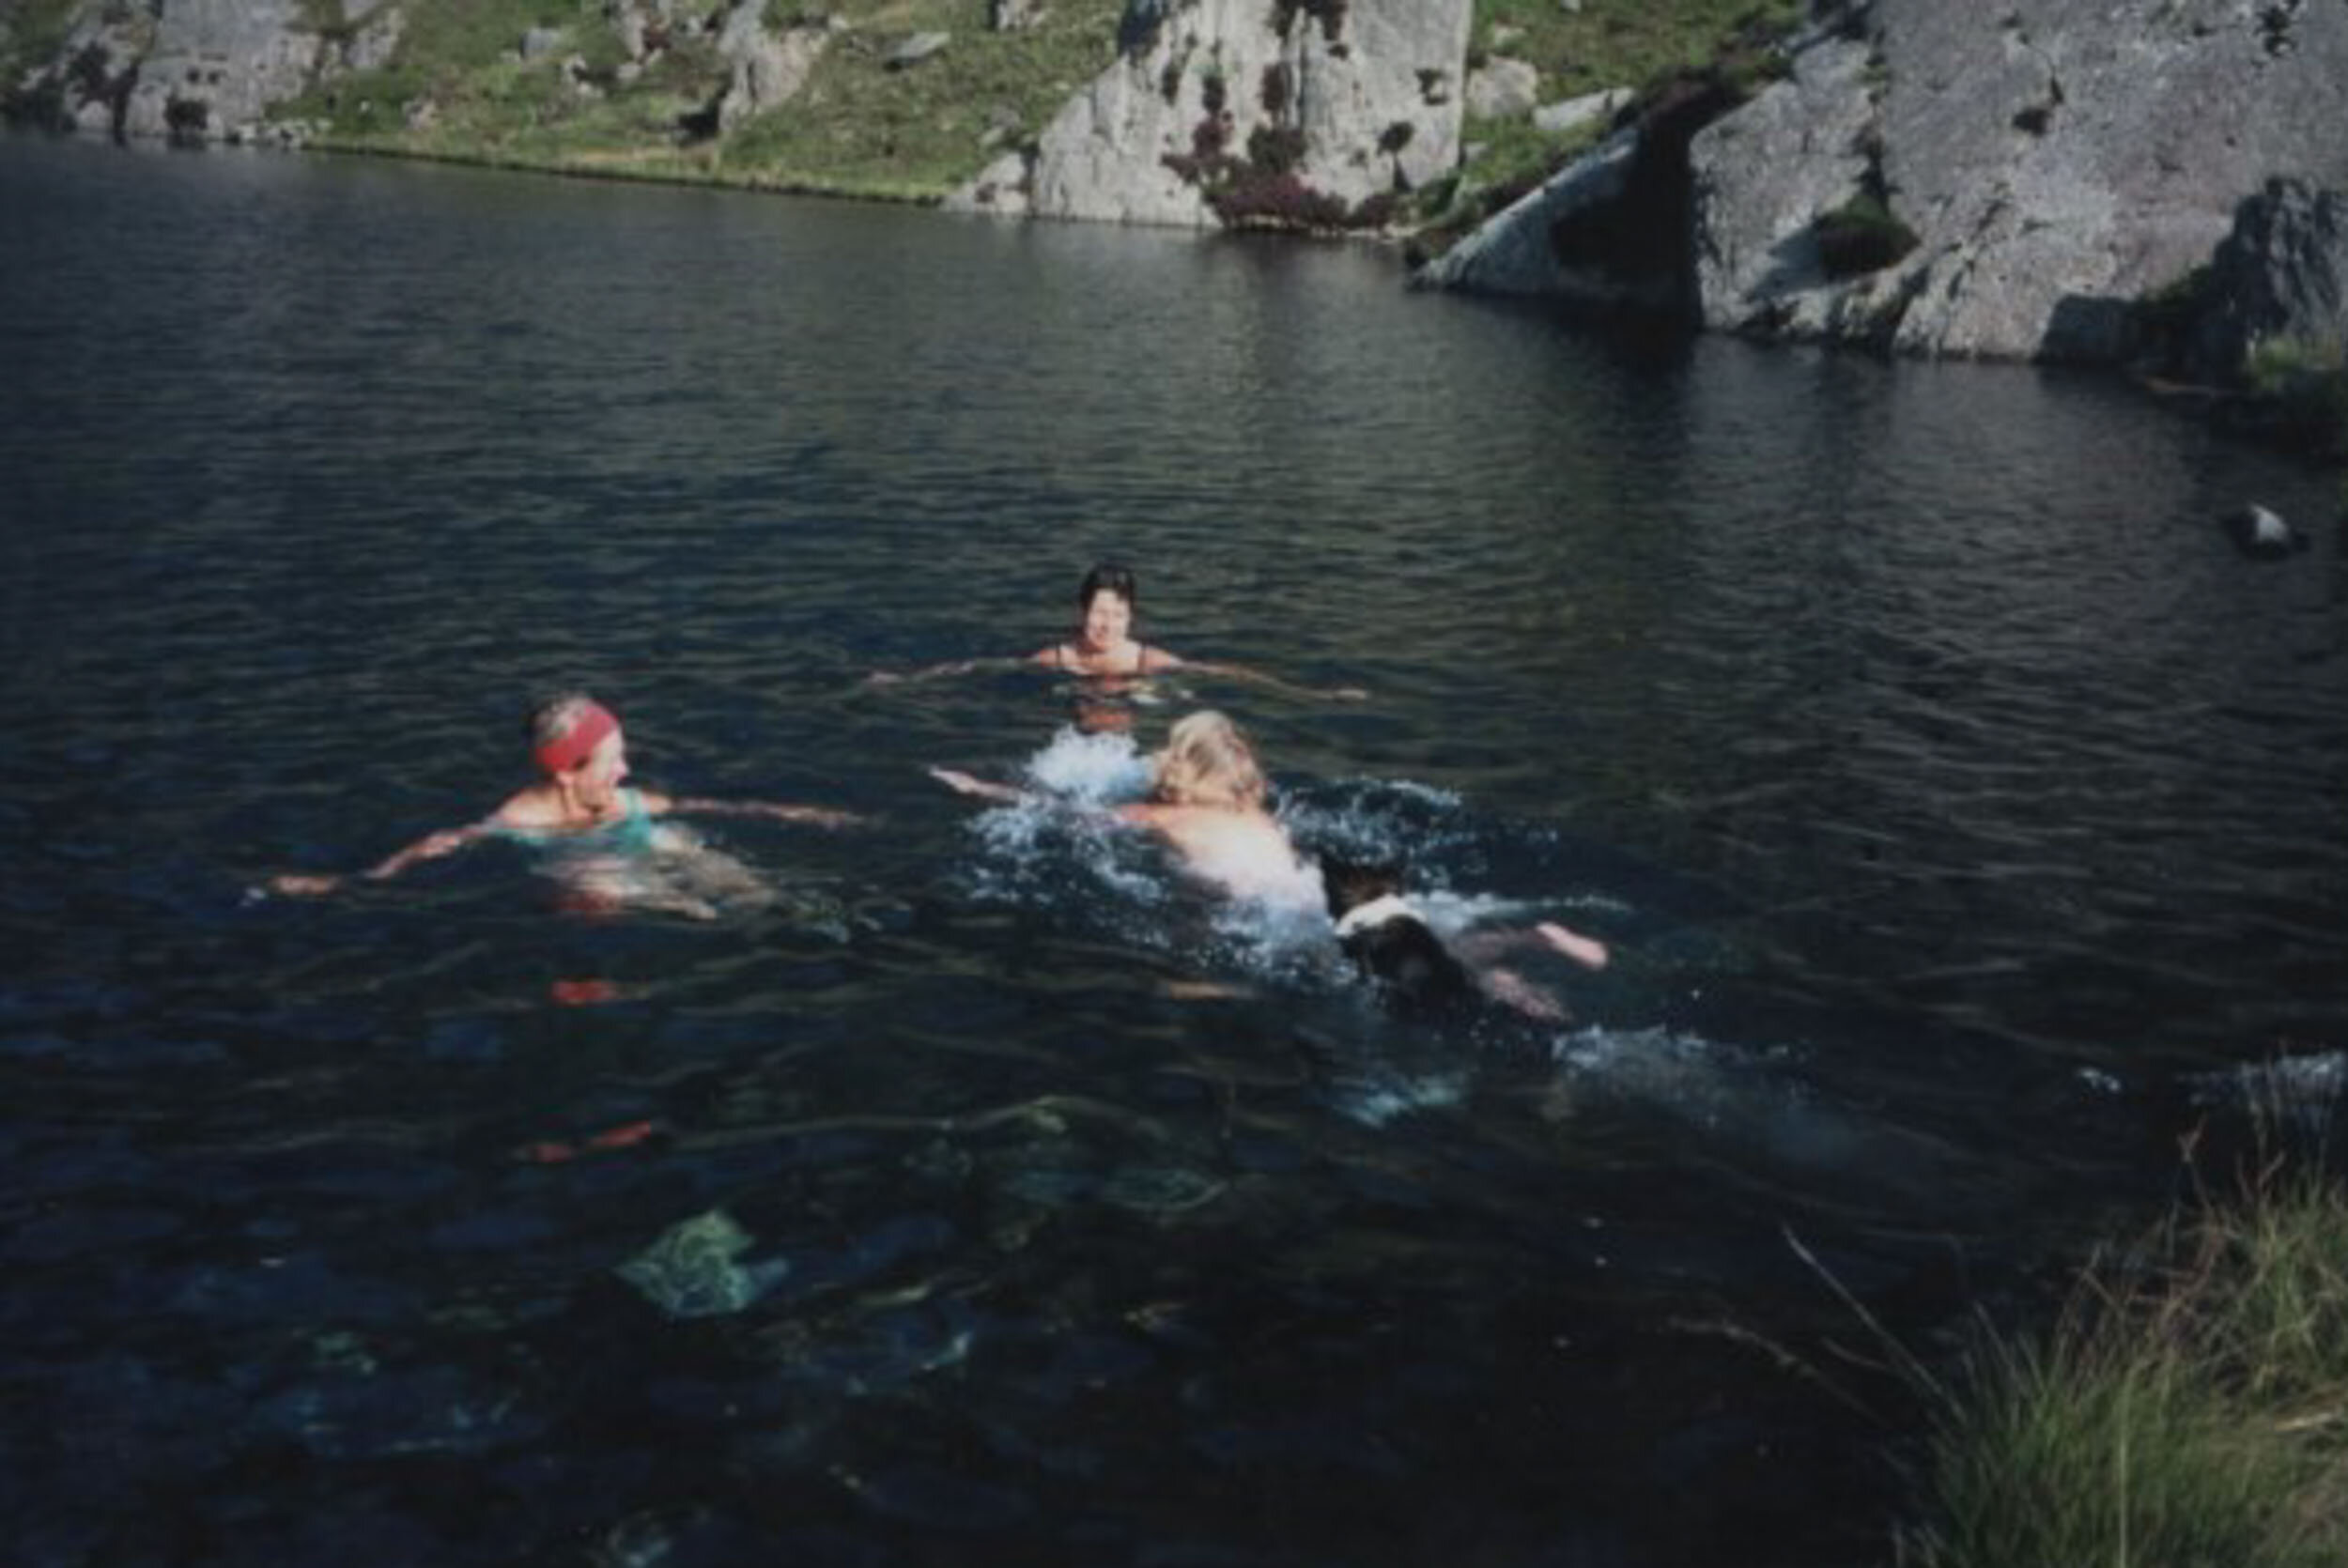 Denise Wilson, Cathy Woodhead and Marlene Halliwell having a post-climb swim in Llynau Cwm Silyn, North Wales, in 2001 